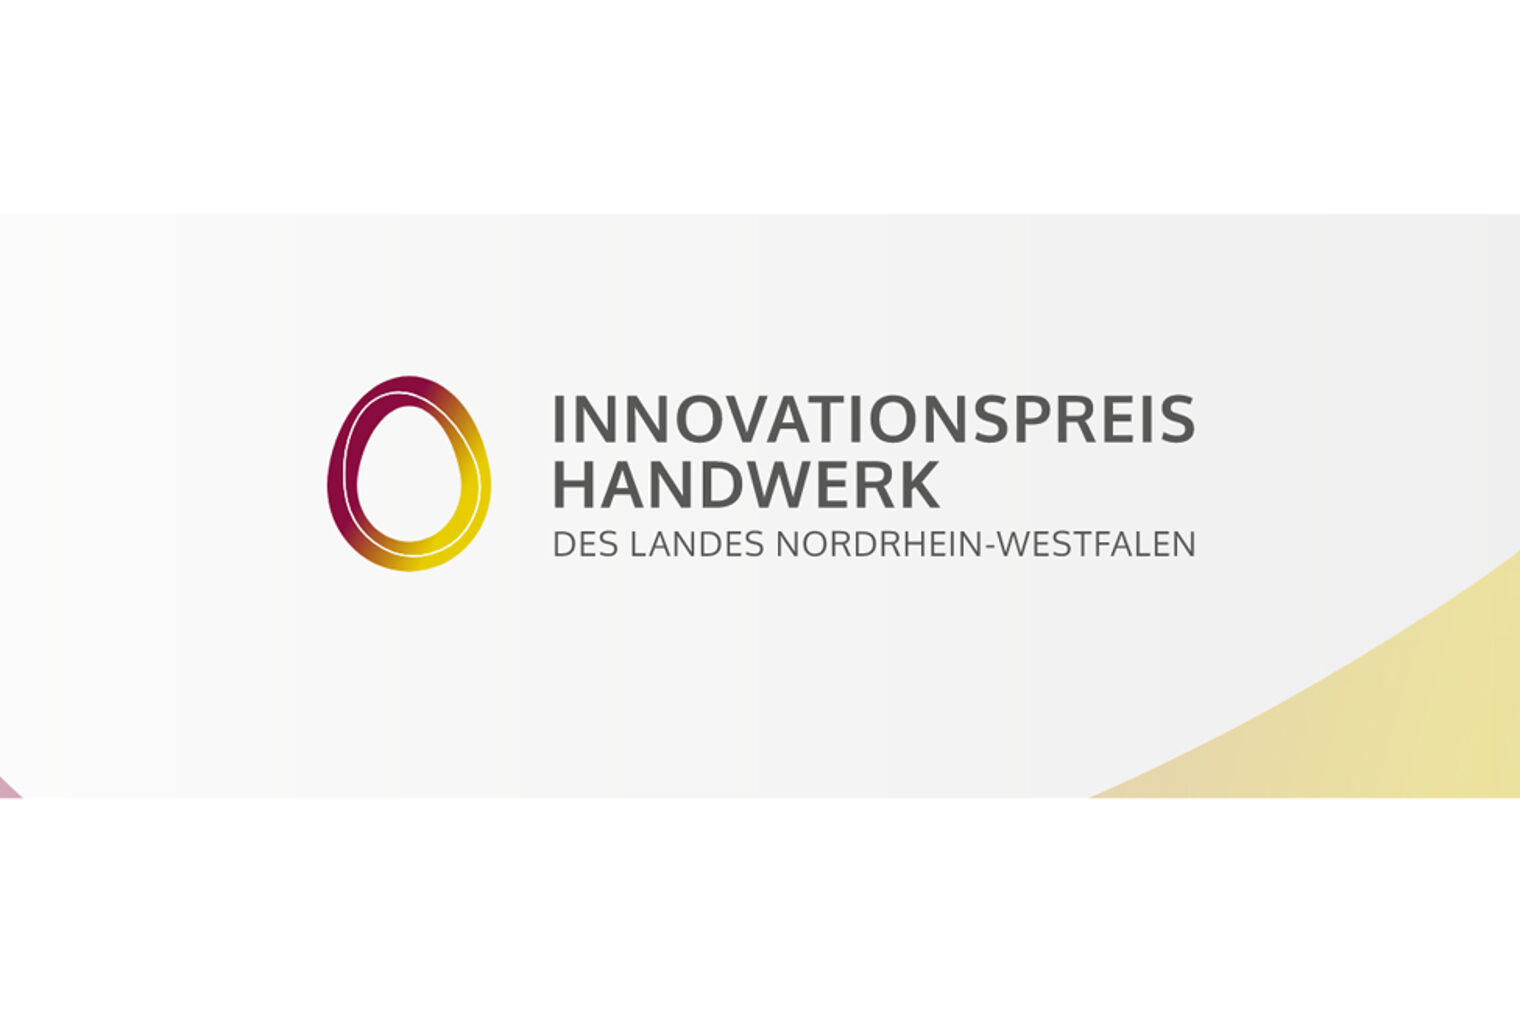 innovationspreis_handwerk_1520x650px